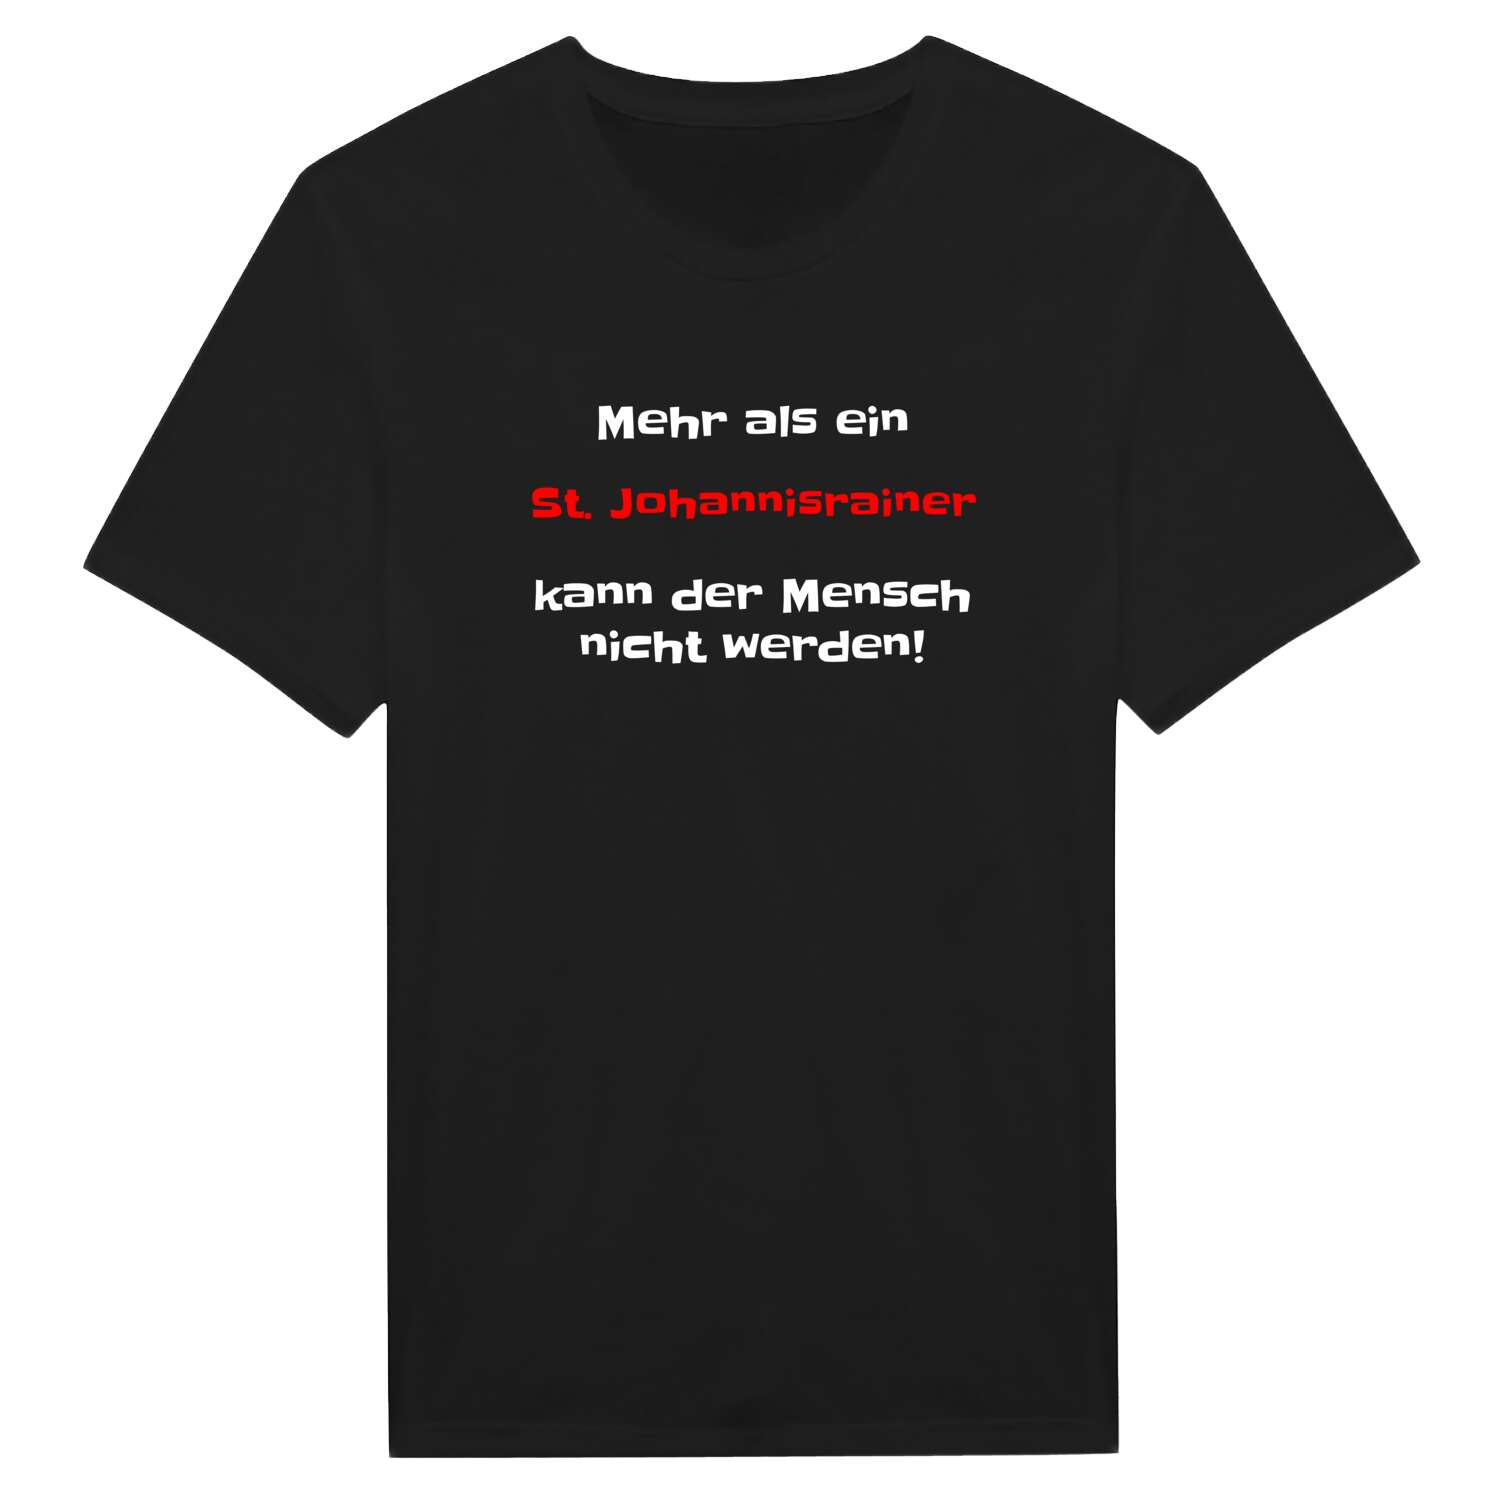 St. Johannisrain T-Shirt »Mehr als ein«